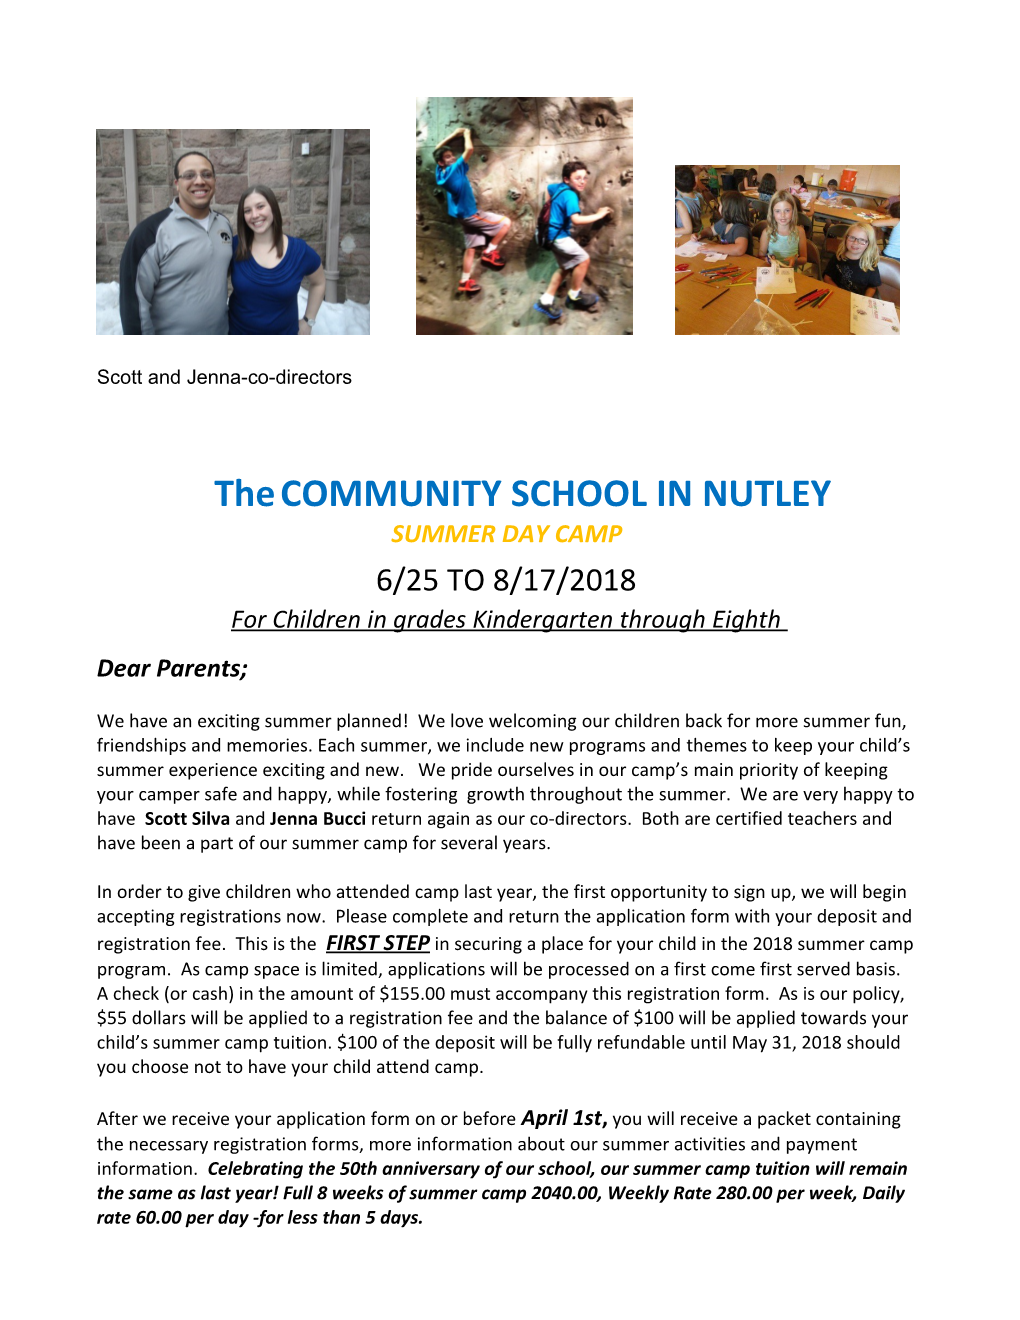 The Communtiy School in Nutley, Inc